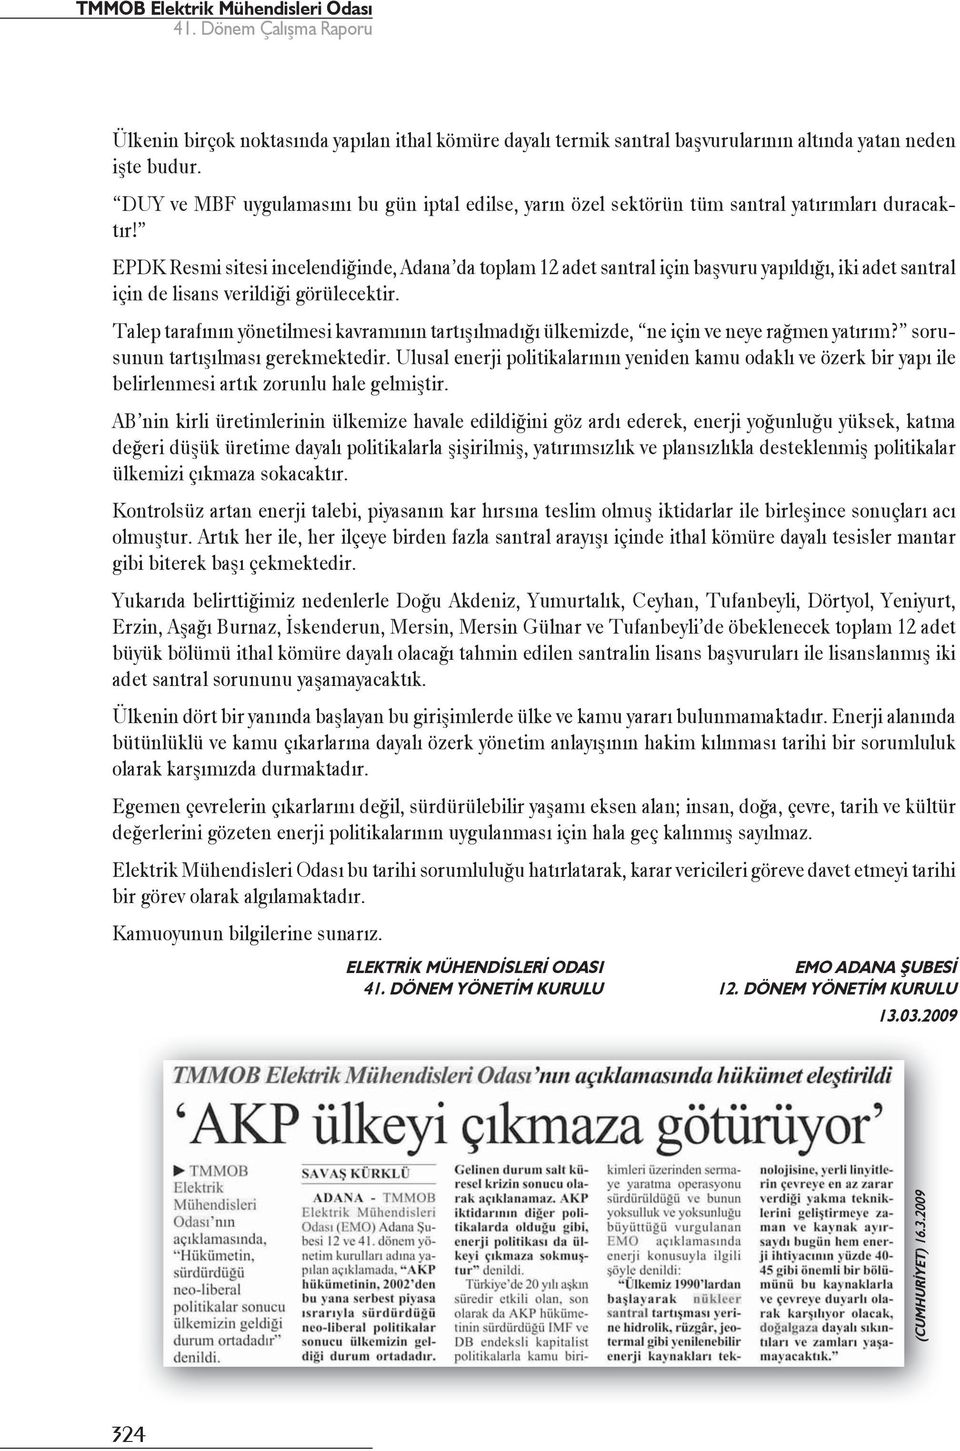 EPDK Resmi sitesi incelendiğinde, Adana da toplam 12 adet santral için başvuru yapıldığı, iki adet santral için de lisans verildiği görülecektir.